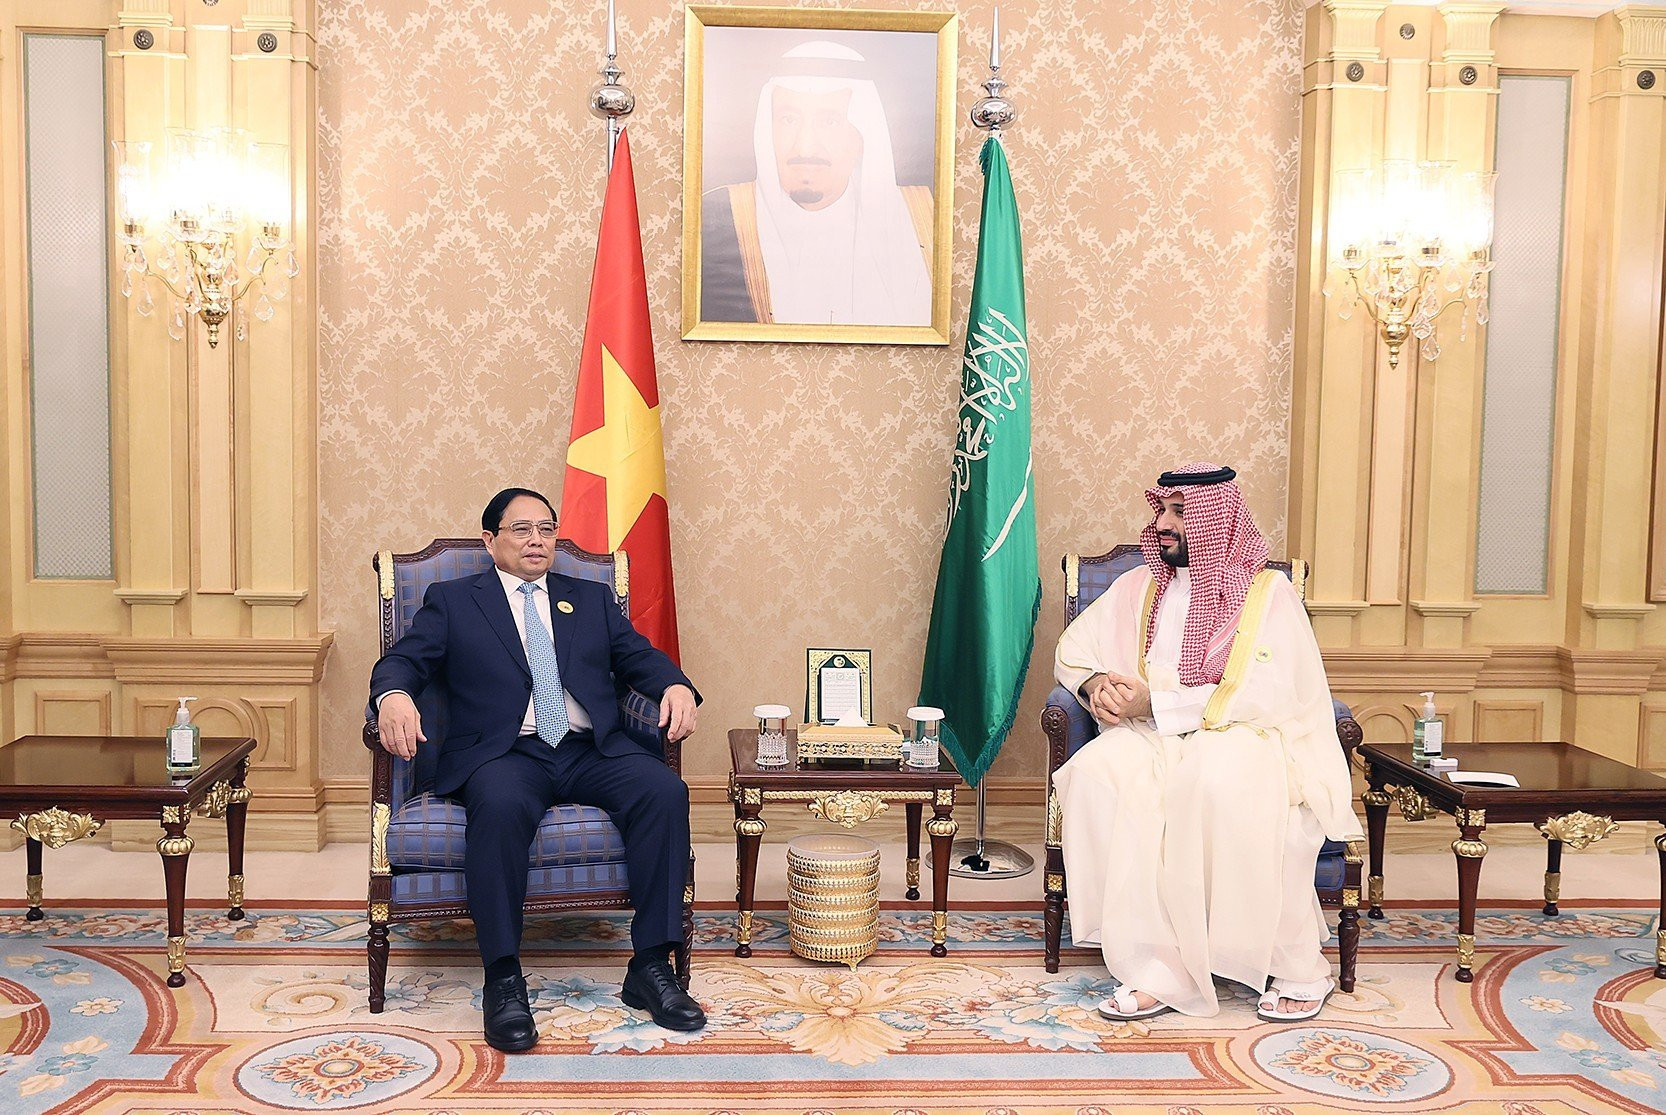 Thủ tướng Phạm Minh Chính hội đàm với Hoàng Thái tử, Thủ tướng Saudi Arabia - Ảnh 2.